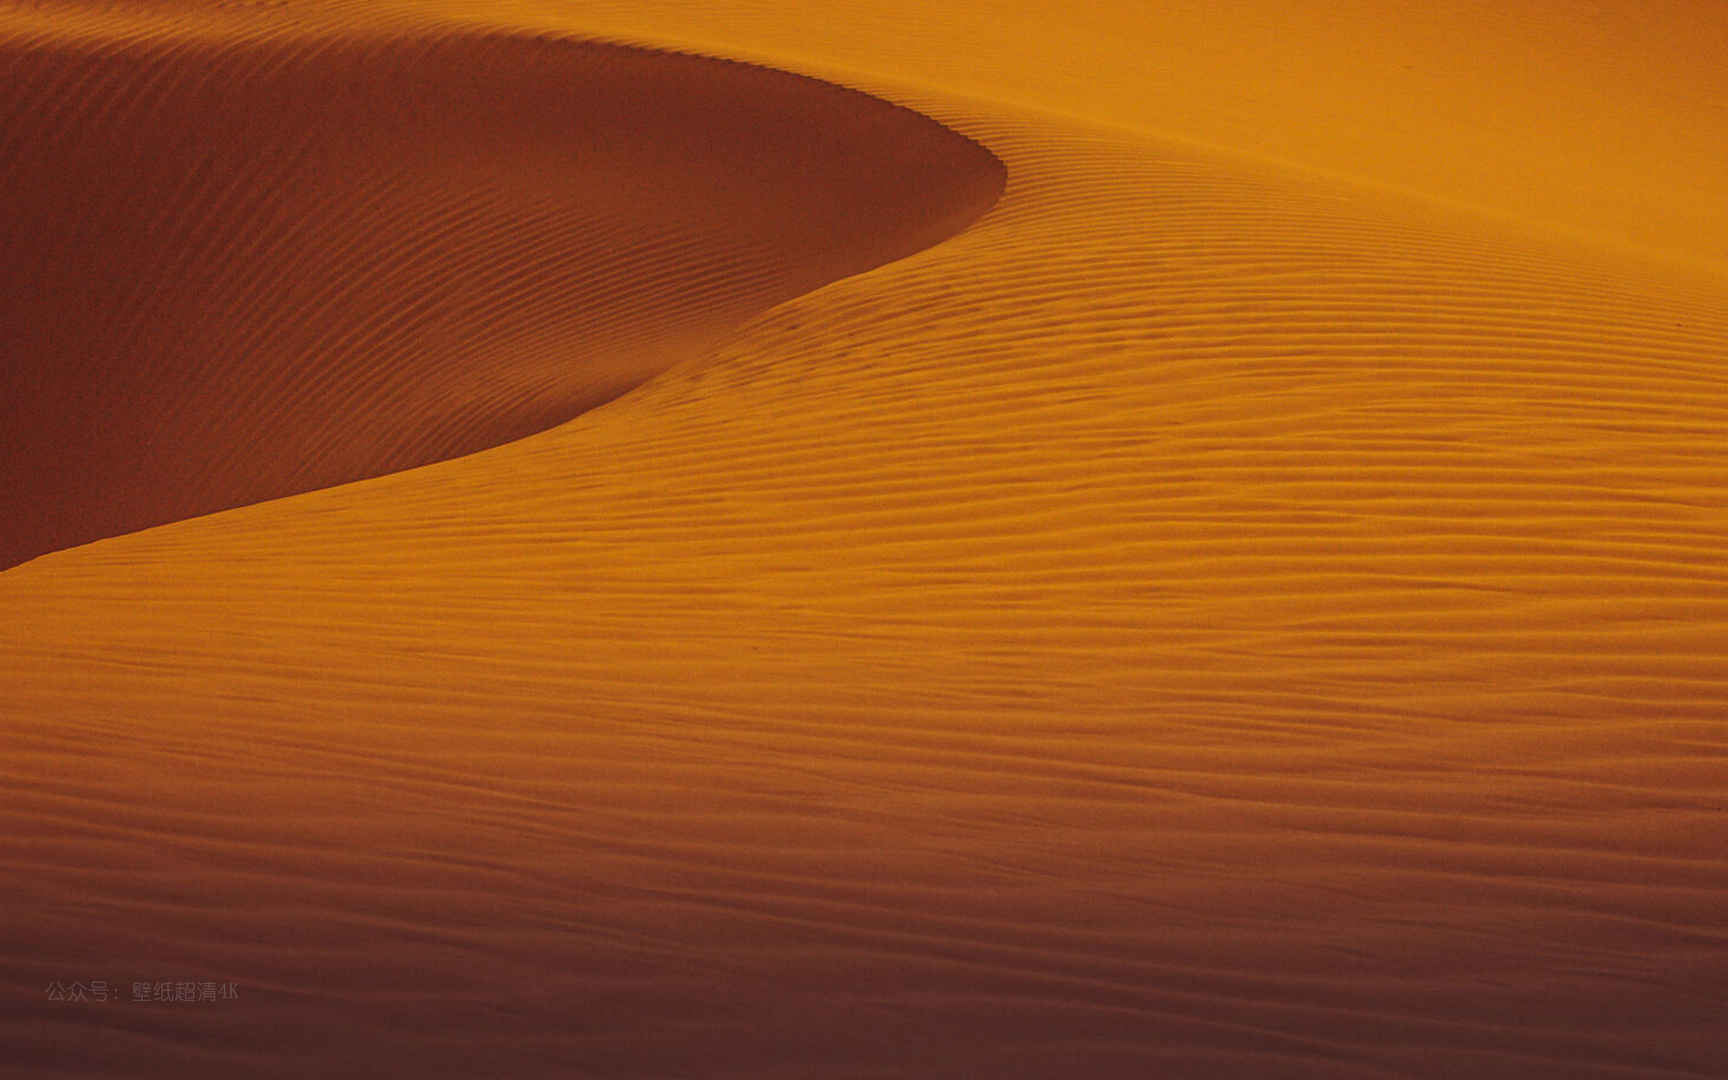 美丽又壮观的沙漠电脑壁纸图片